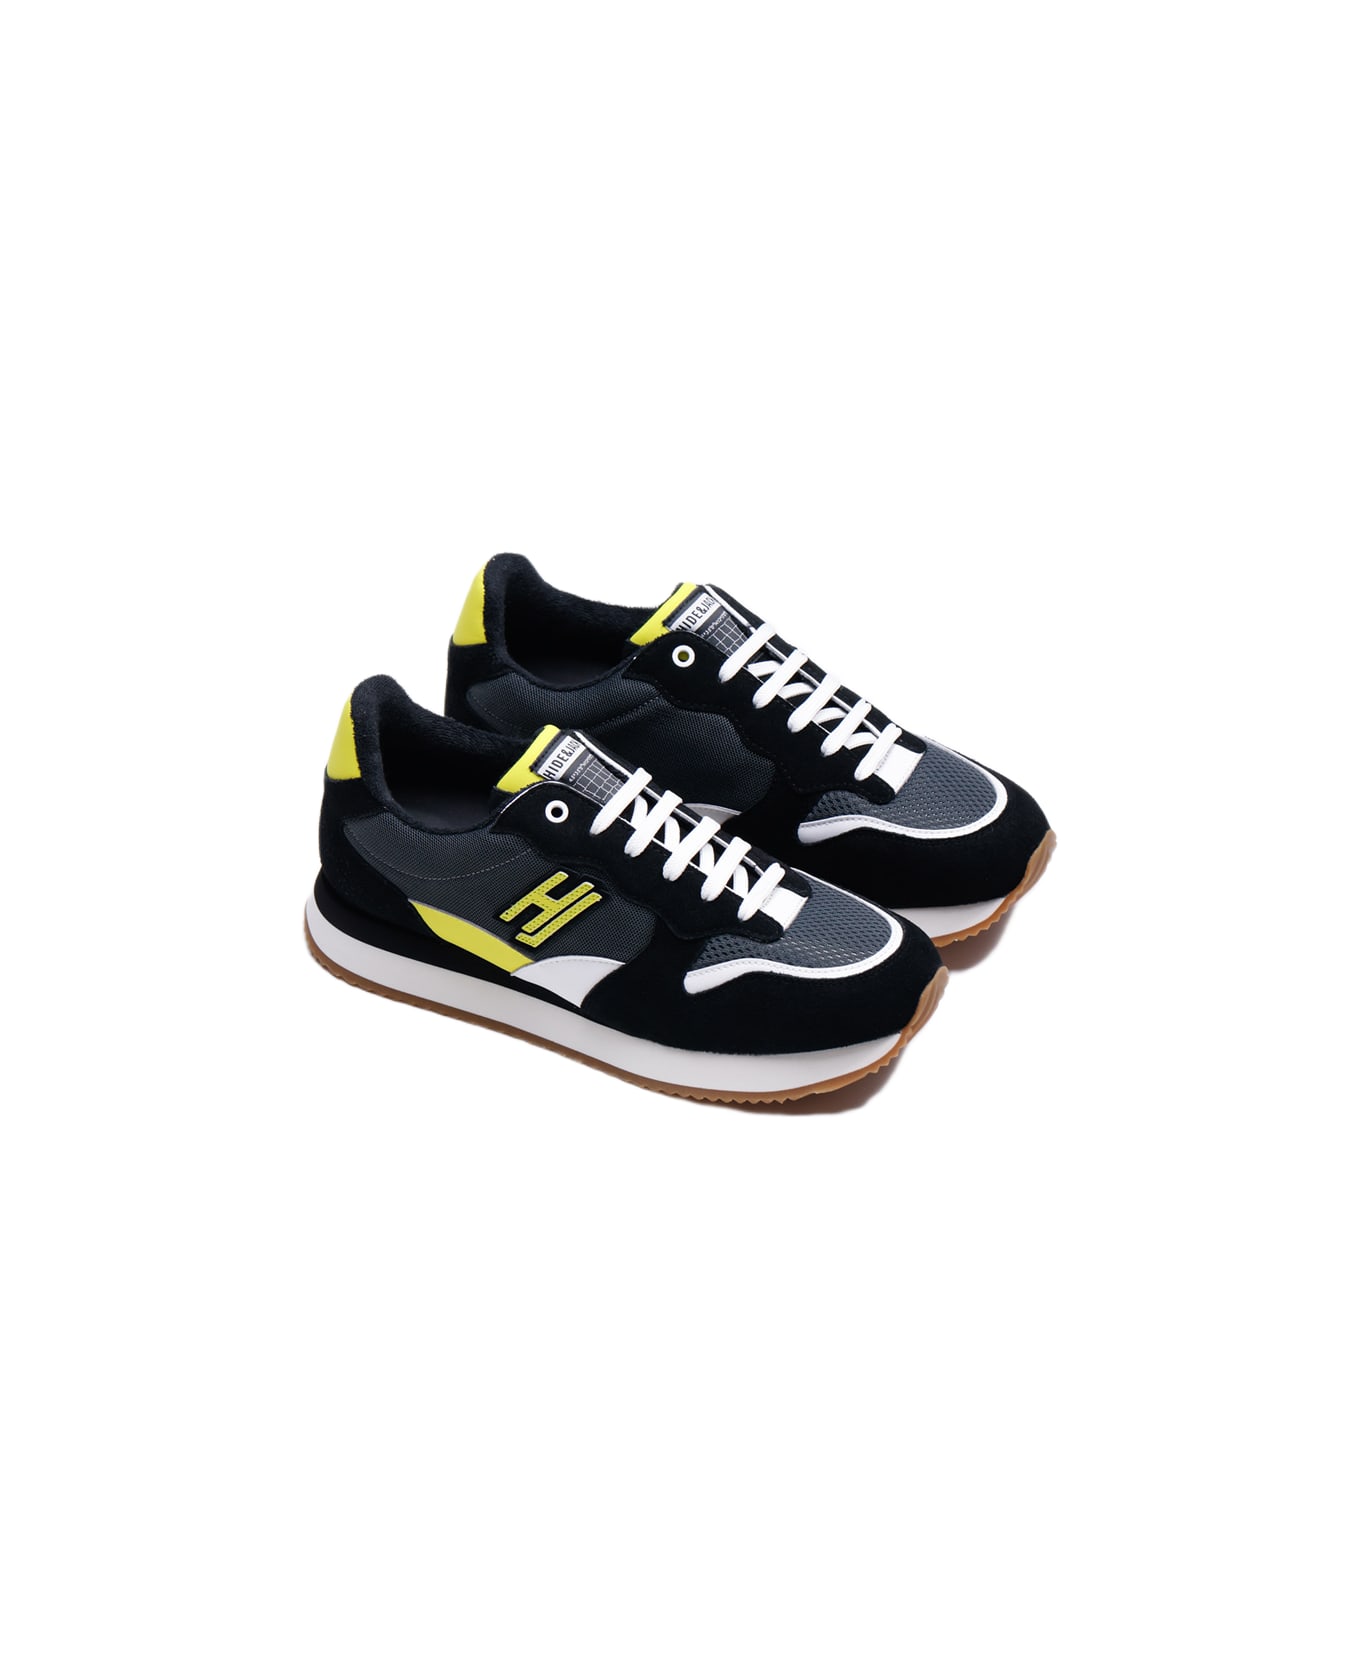 Hide&Jack Low Top Sneaker - Over Black Yellow